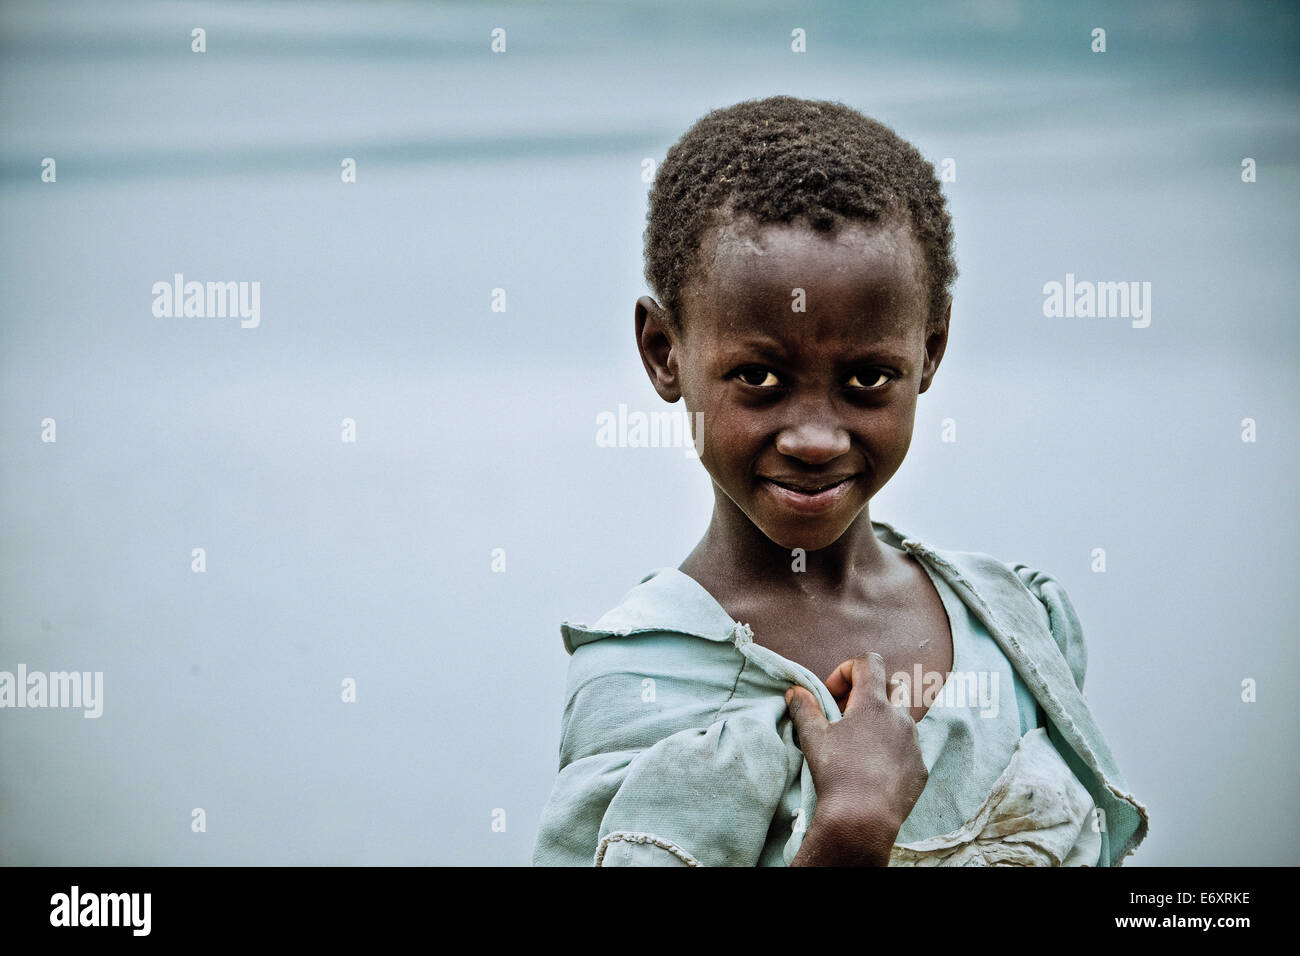 Young girl, Uganda, Africa Stock Photo